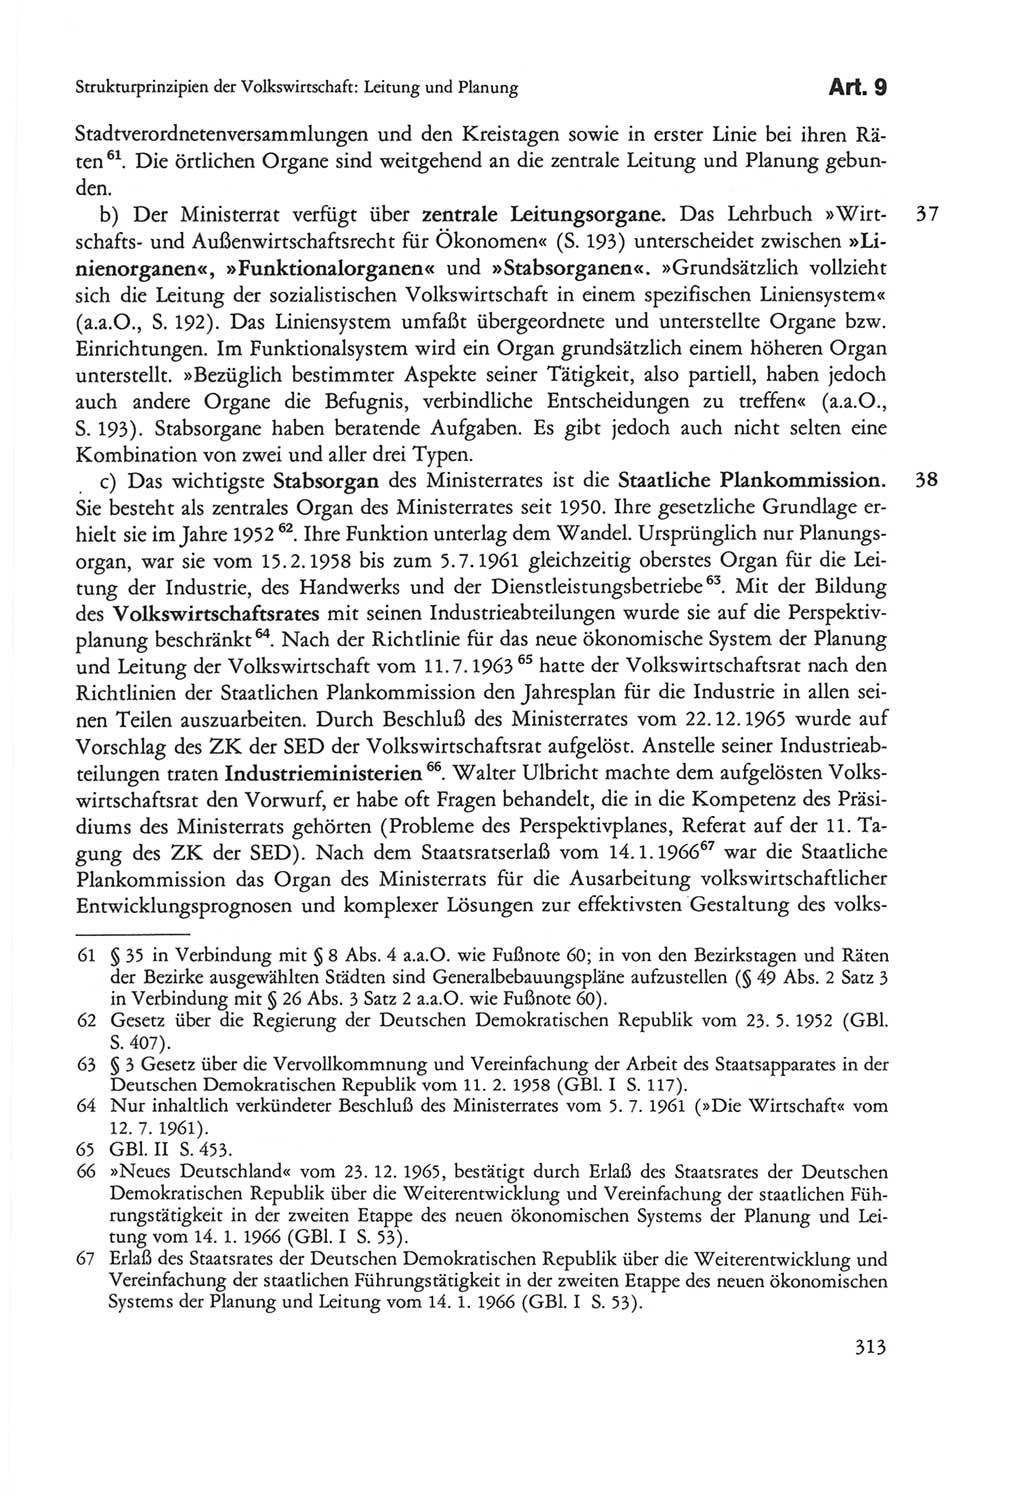 Die sozialistische Verfassung der Deutschen Demokratischen Republik (DDR), Kommentar mit einem Nachtrag 1997, Seite 313 (Soz. Verf. DDR Komm. Nachtr. 1997, S. 313)